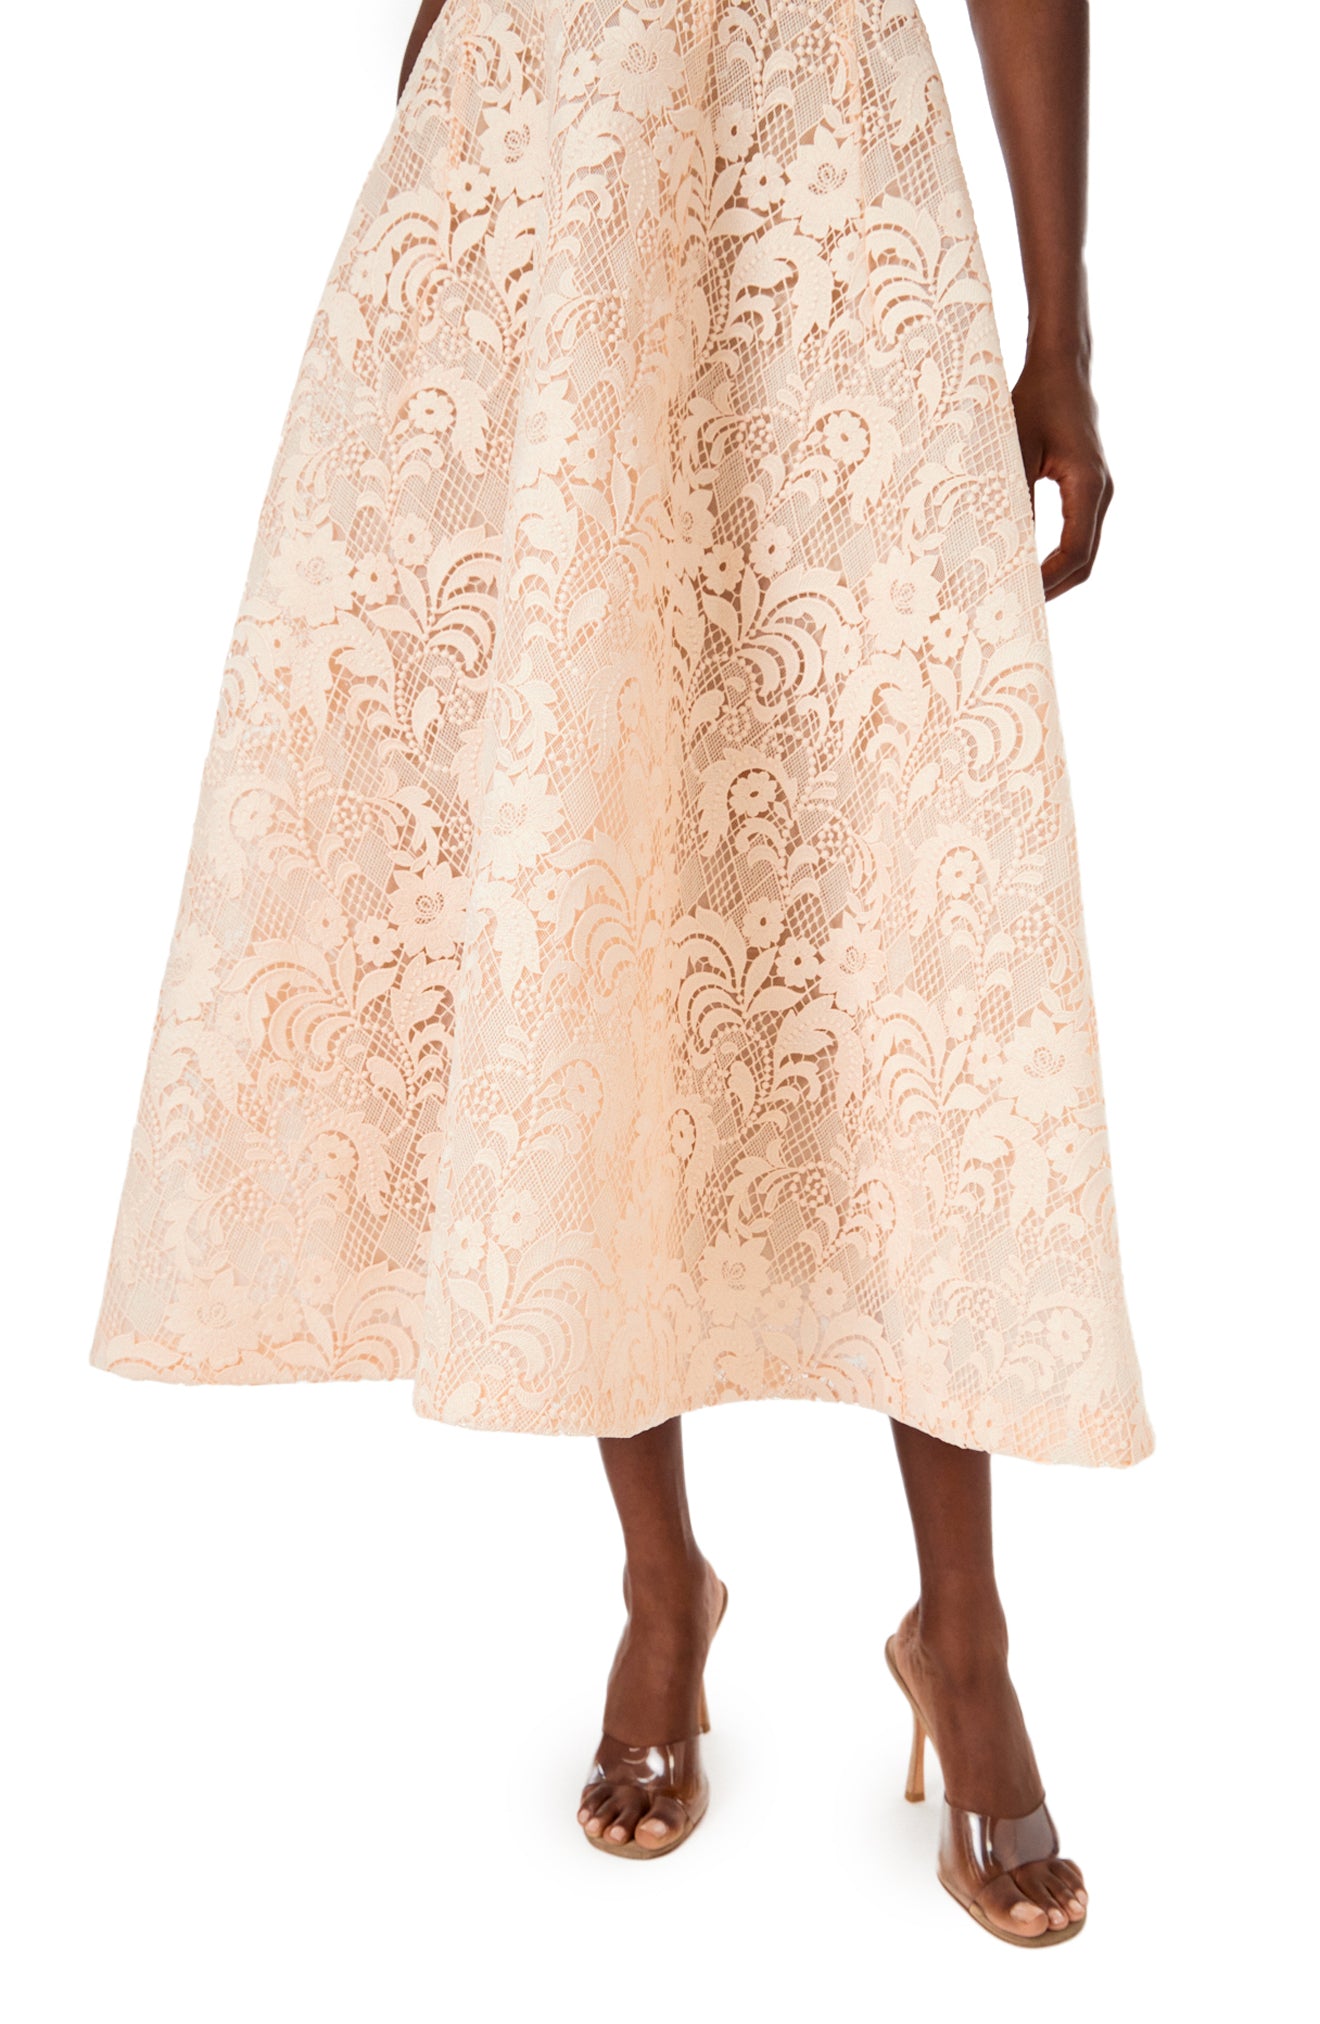 Monique Lhuillier short sleeve, midi length dress in blush creme lace.